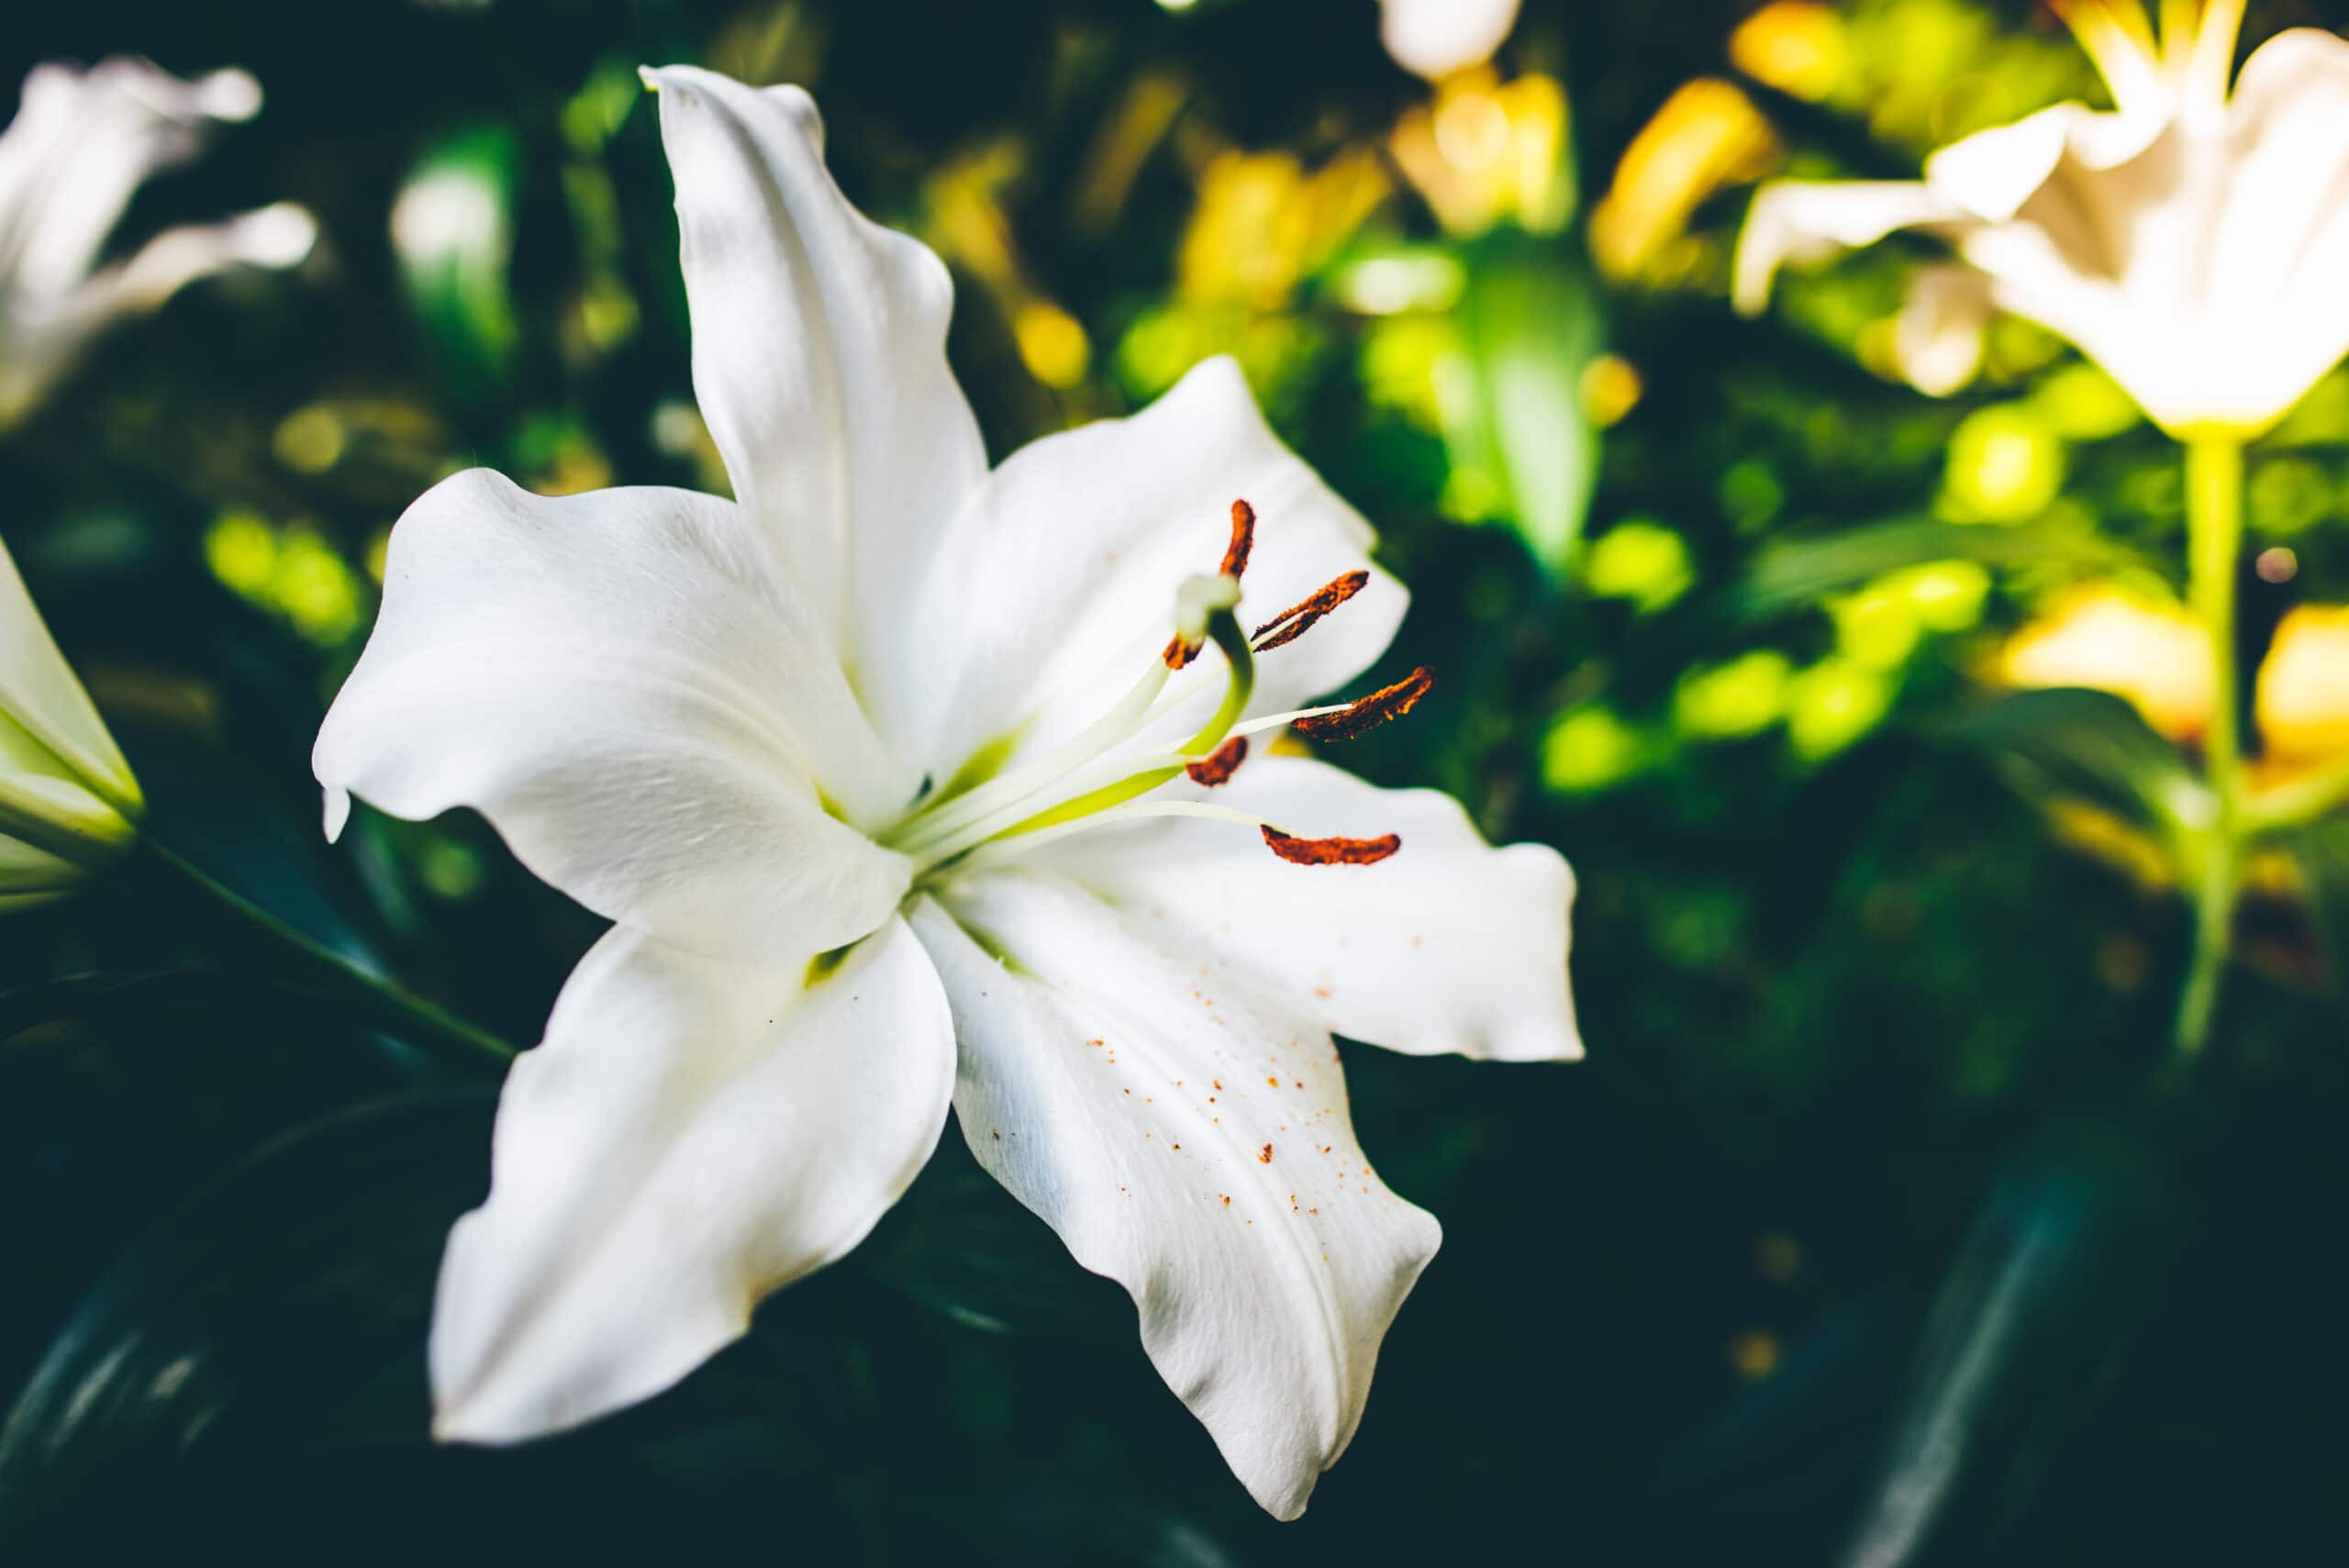 Despertando el Espíritu: El mágico significado espiritual de la Flor de Lirium | Soy Espiritual